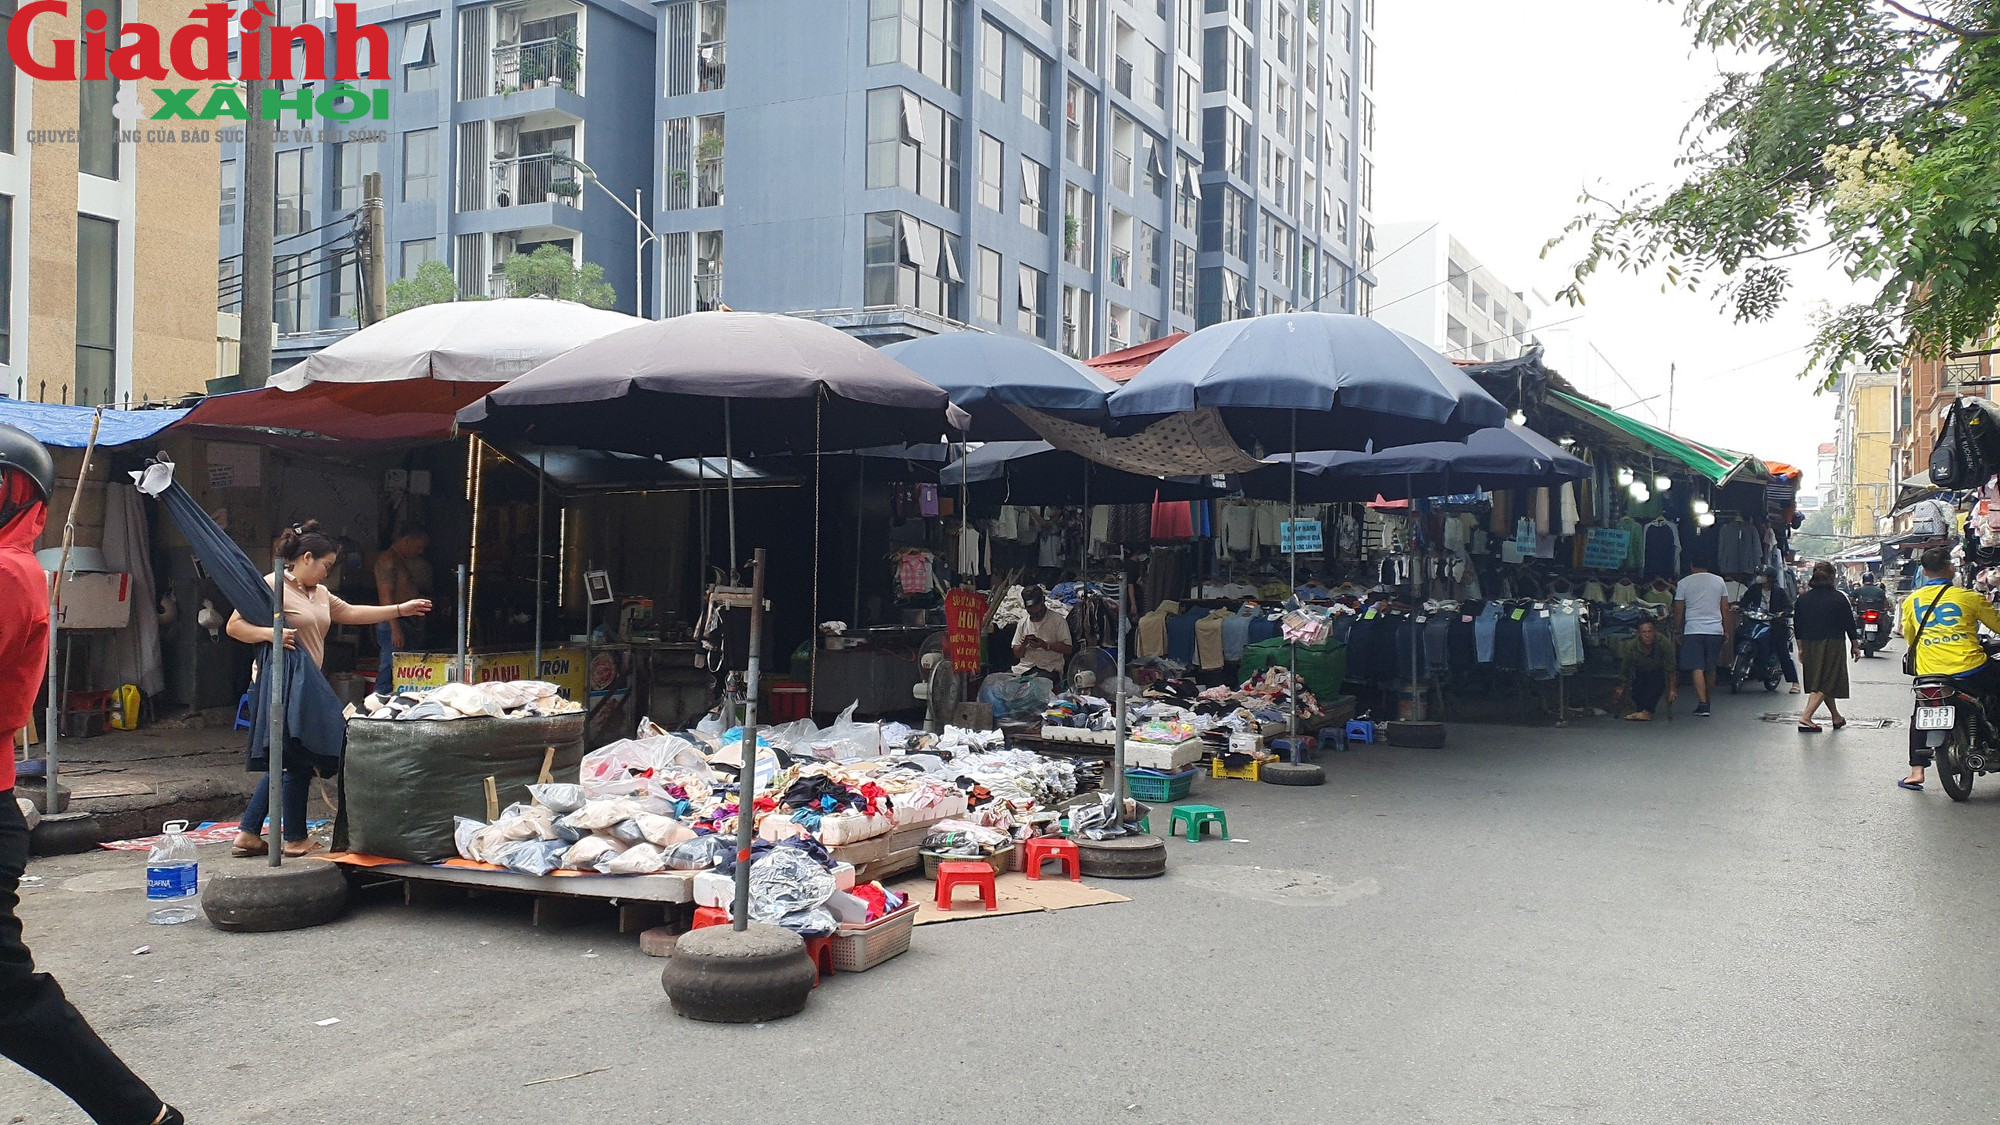 Hà Nội: Đường Phan Văn Trường đang bị chiếm dụng bởi ‘thiên đường mua sắm’ giới trẻ  - Ảnh 4.